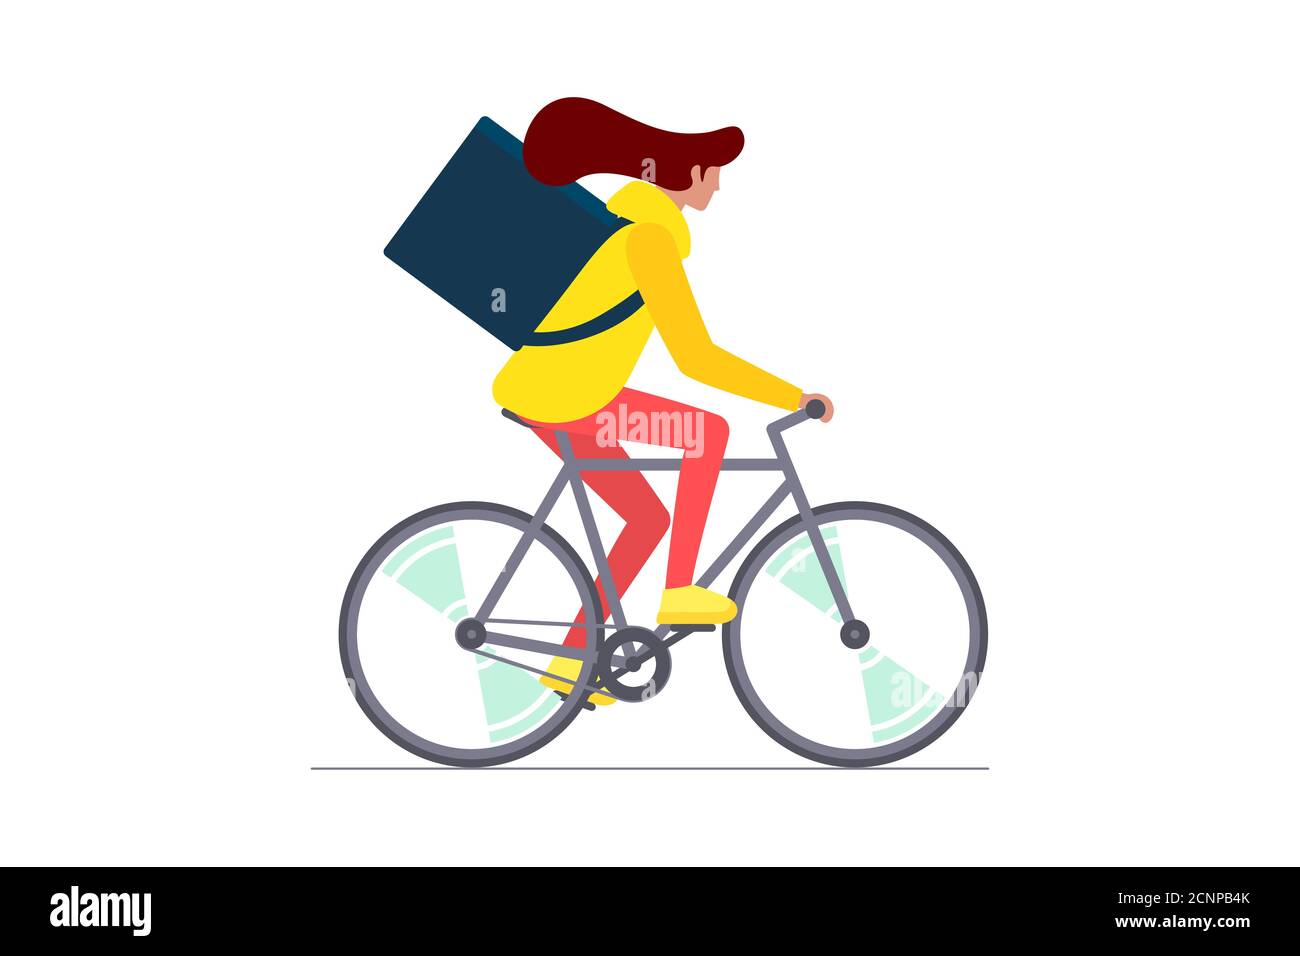 Joven mensajero femenino con mochila caja de montar en bicicleta y lleva mercancías y paquetes de alimentos. Servicio de pedidos de entrega ecológica de ciclo rápido. Ilustración vectorial del eps aislado Ilustración del Vector